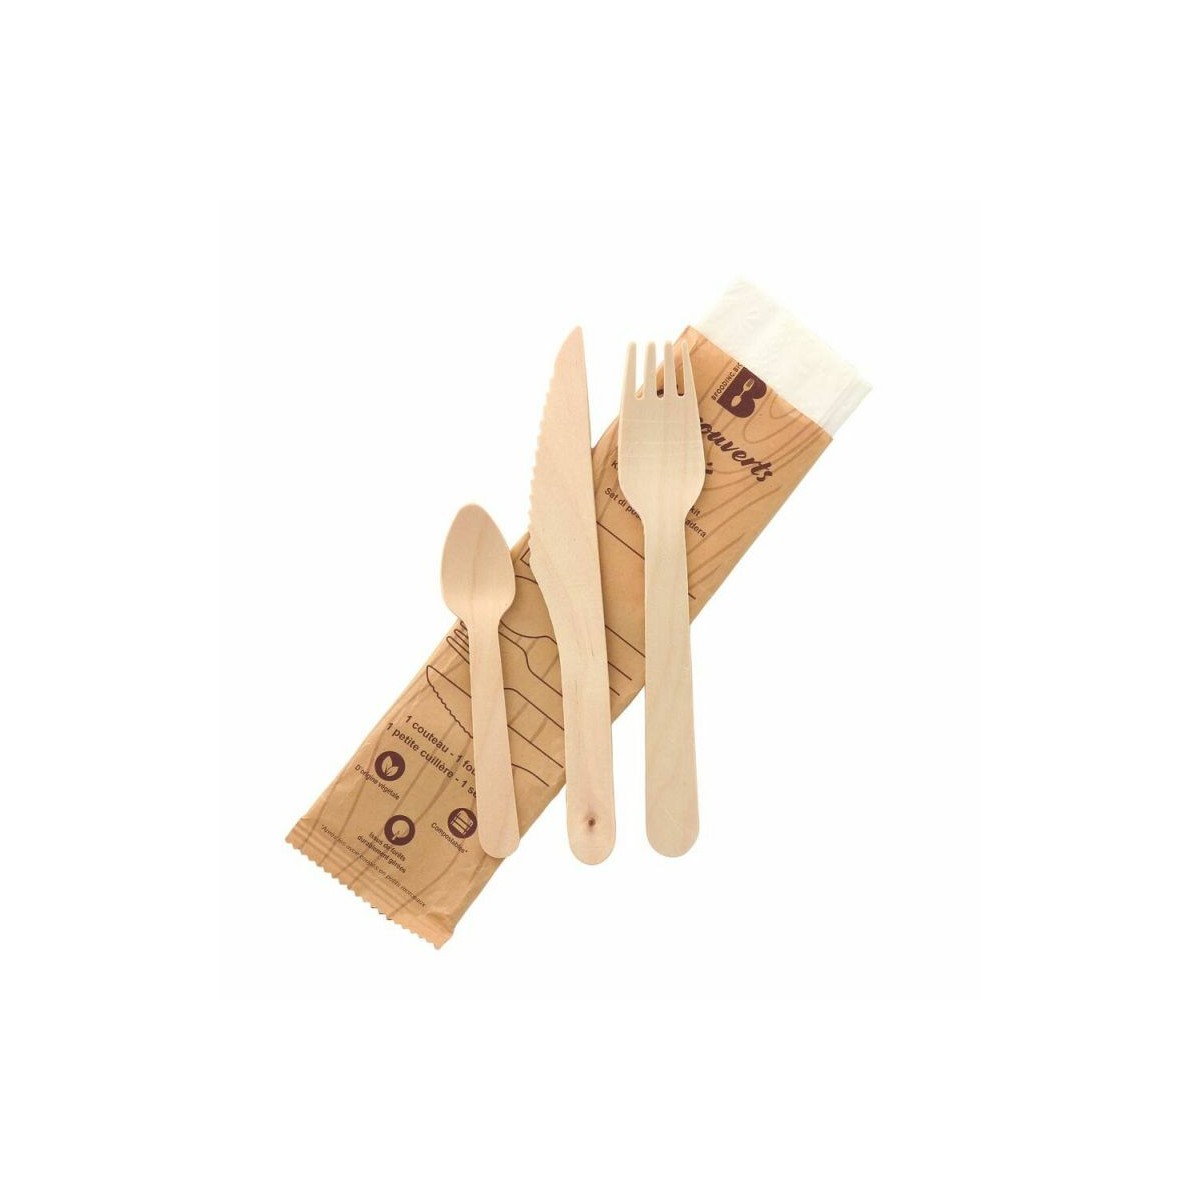 Kit couvert bois 4 en 1: couteau, fourchette, cuillère à dessert et  serviette blanche